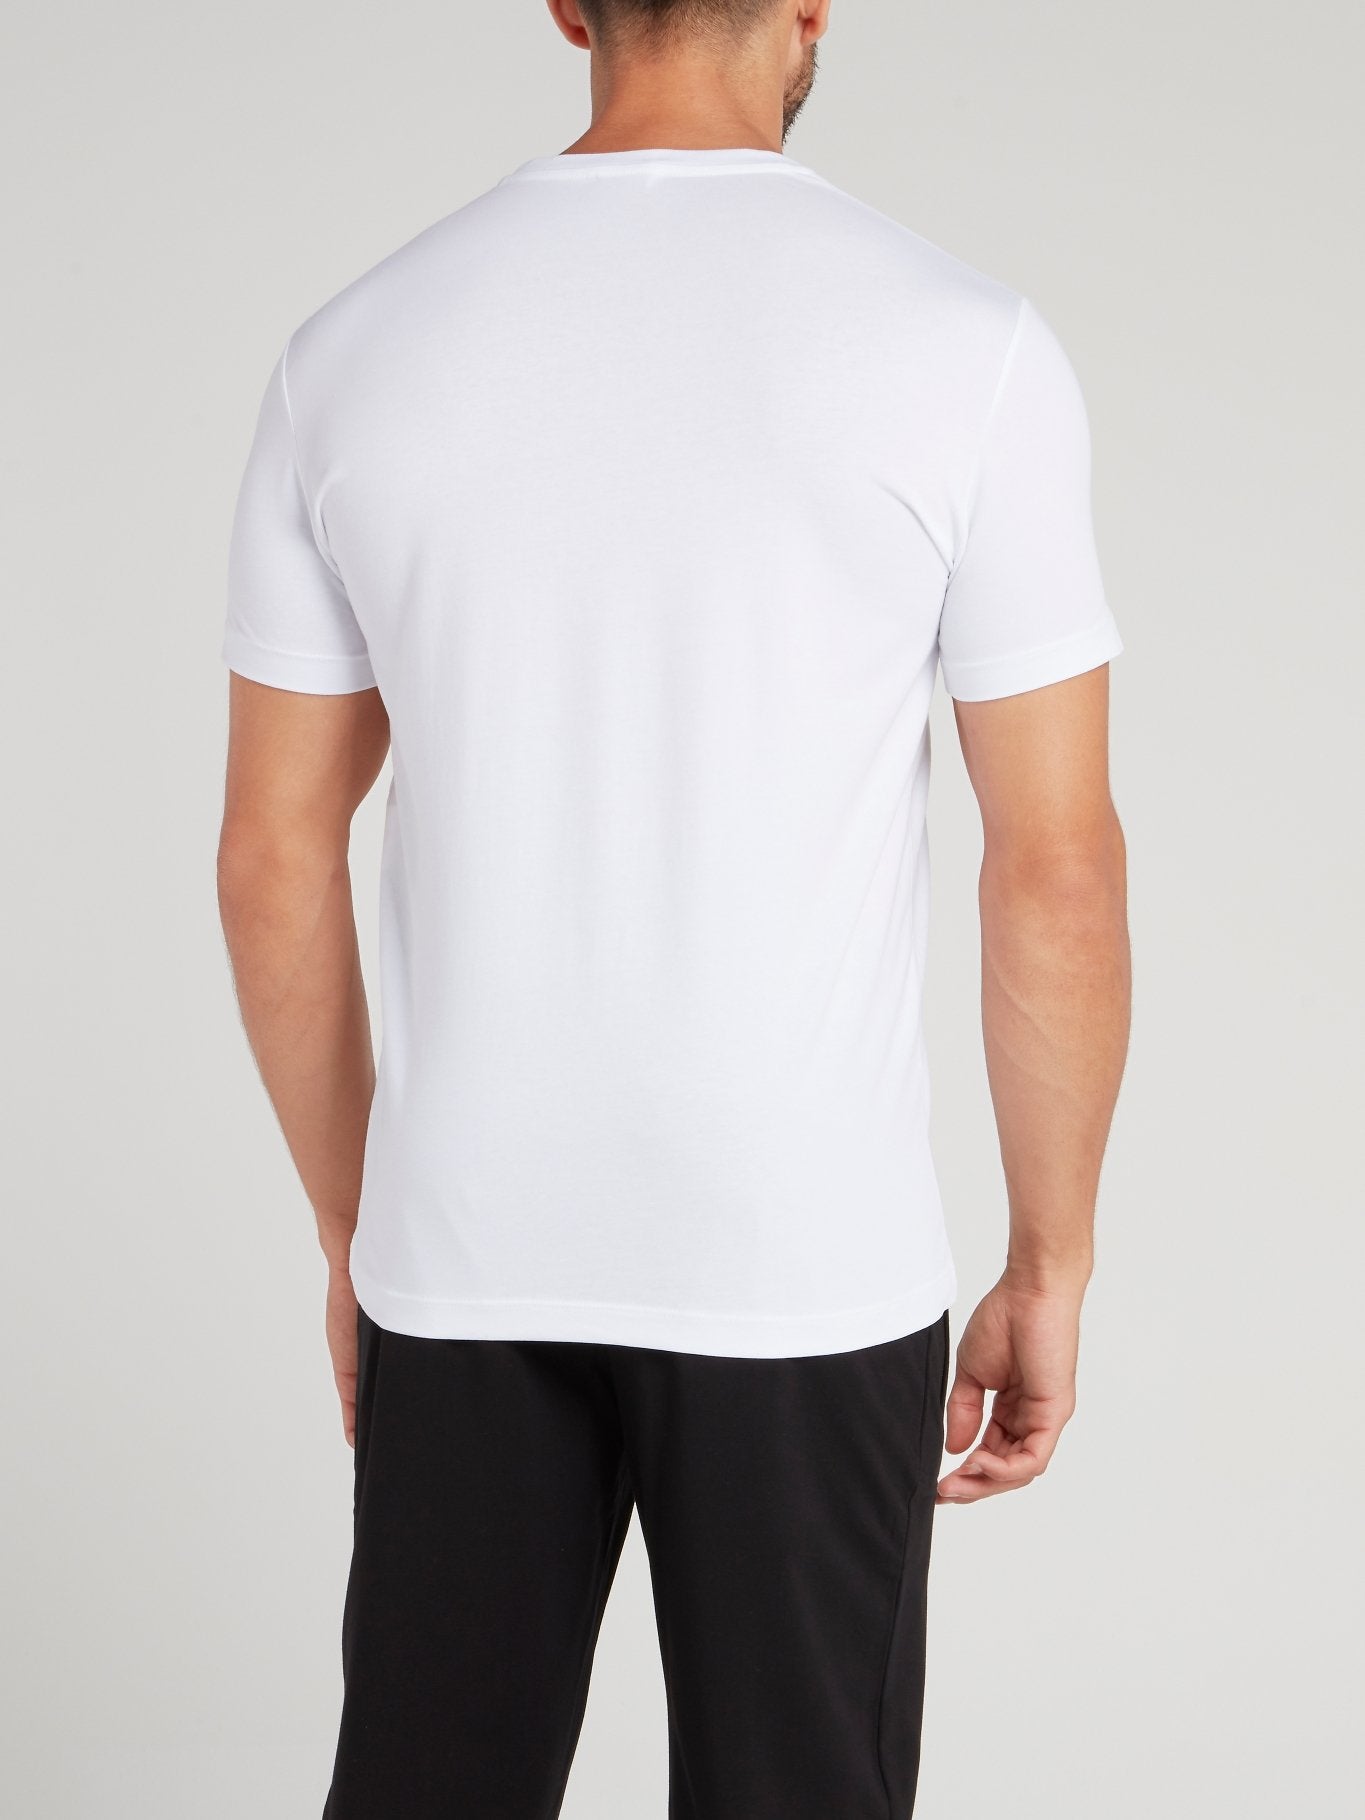 White Chevron Graphic T-Shirt